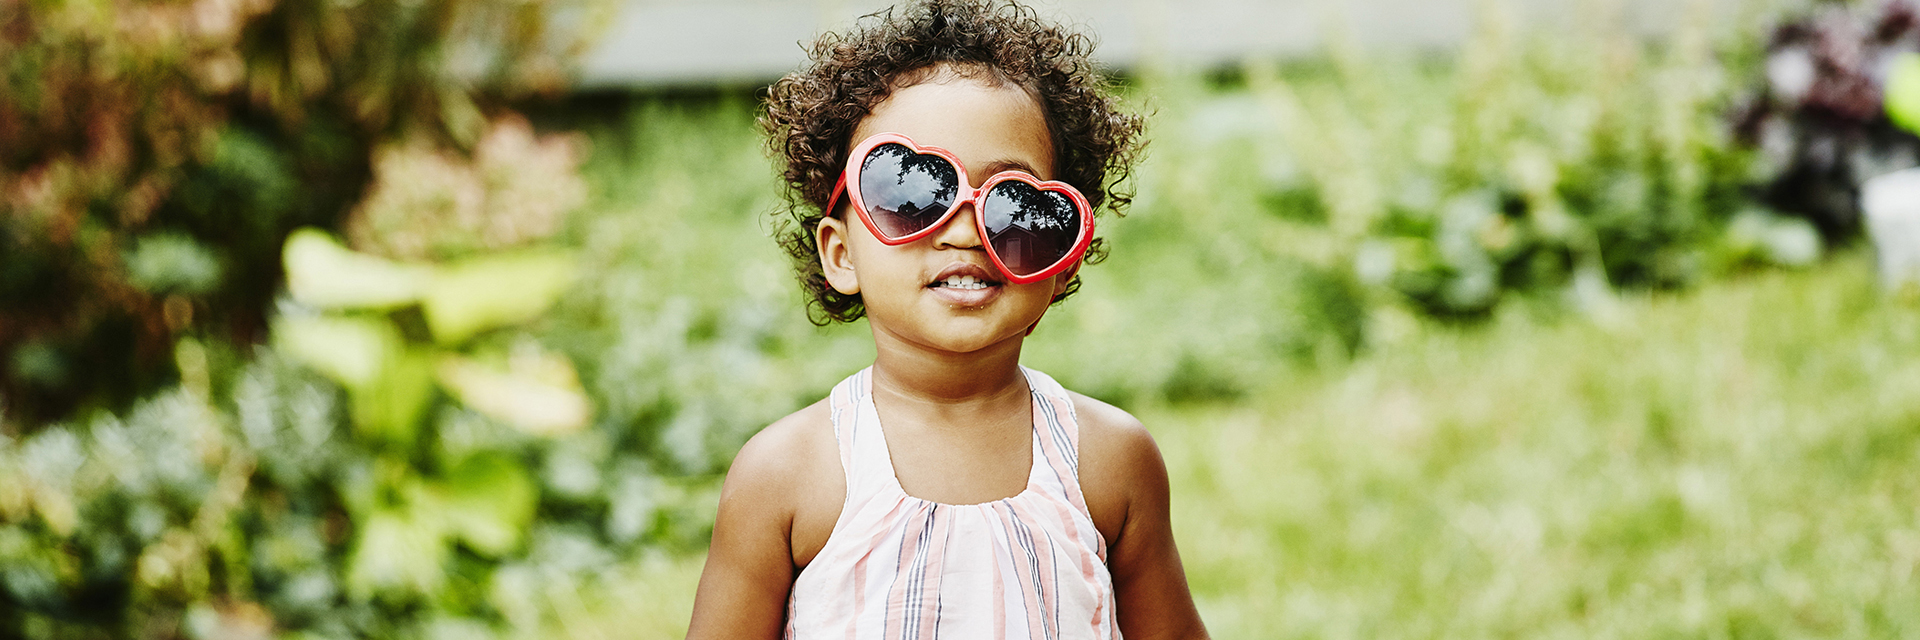 Little girl in sunglasses